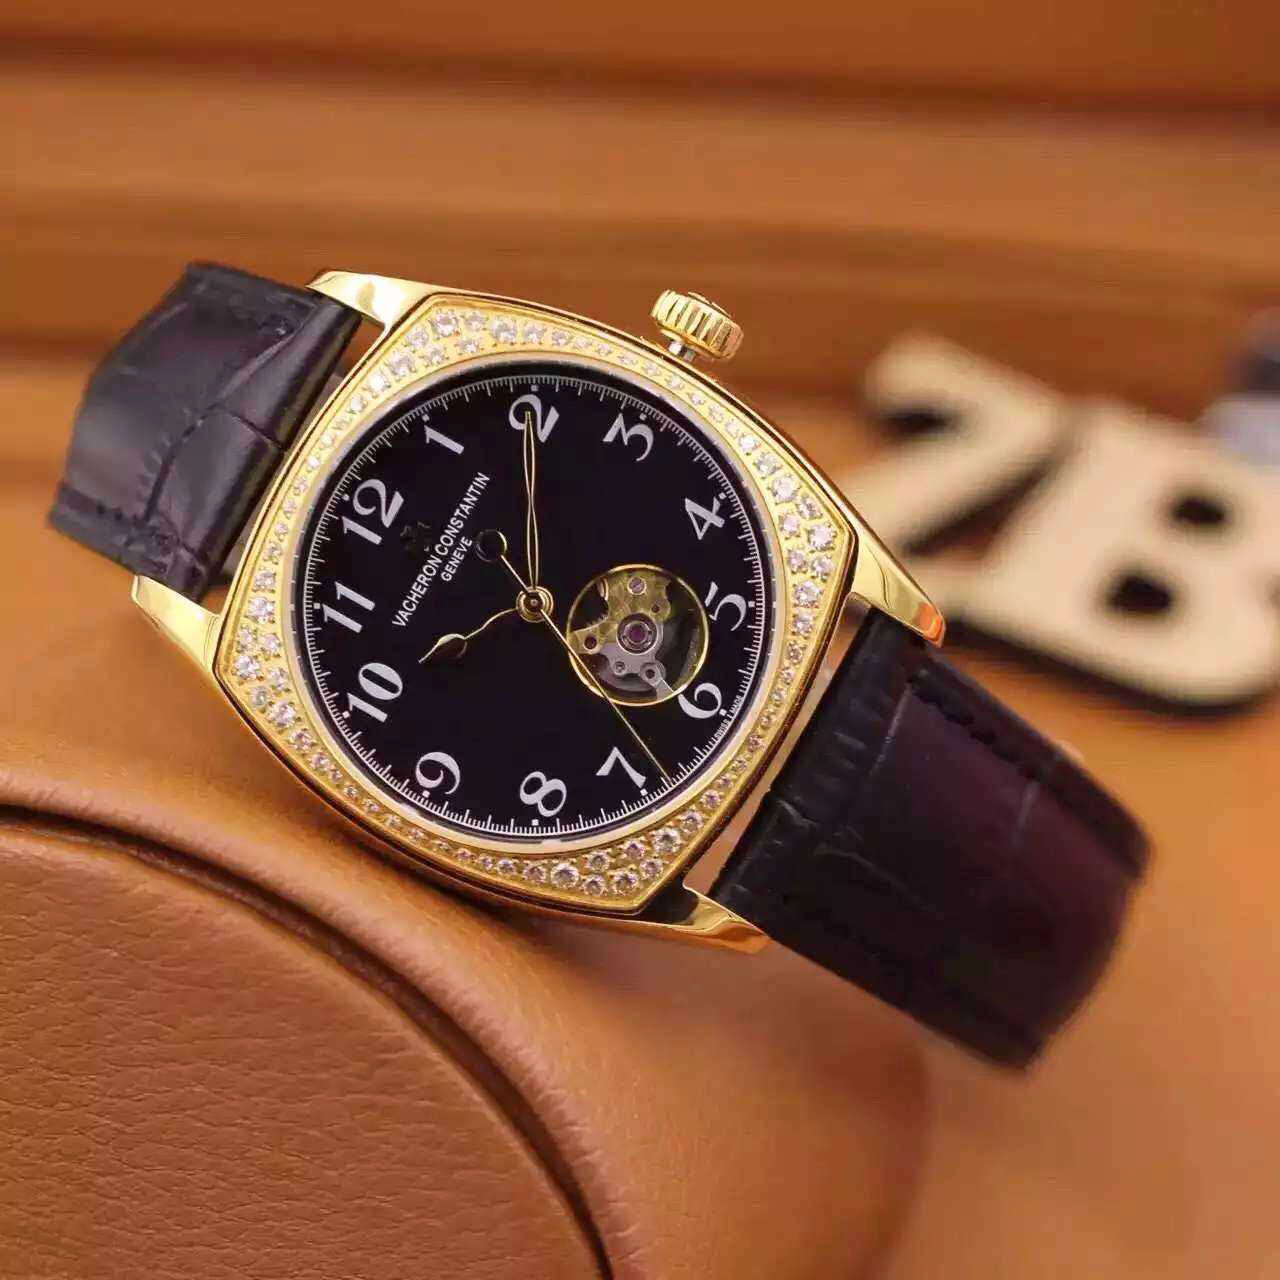 江詩丹頓 Vacheron Constantin HARMONY系列新款7820S/000R-B051腕錶 搭載9015機芯